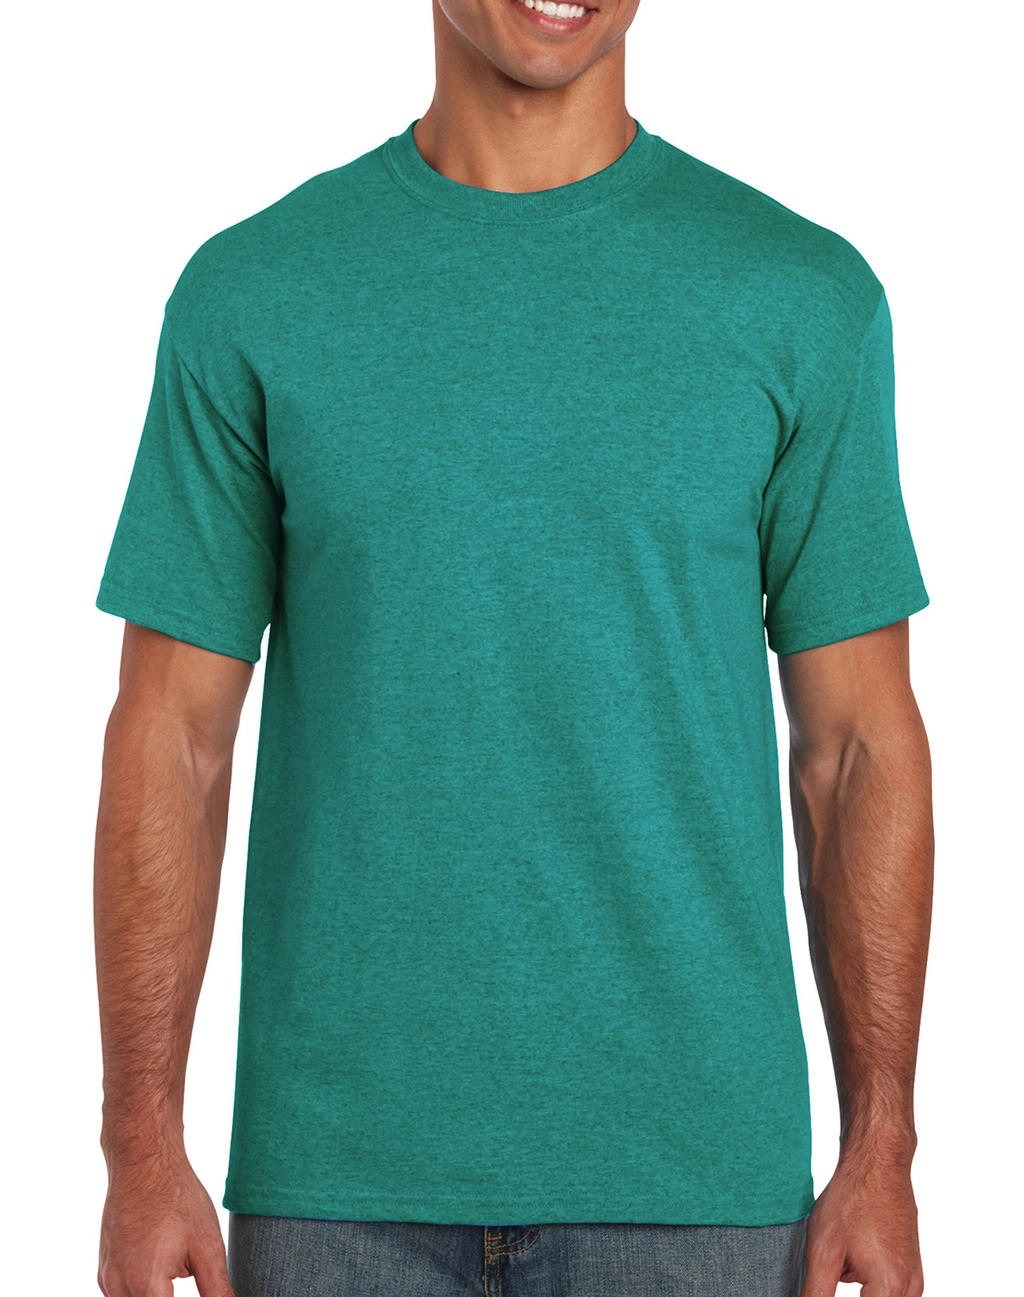 Heavy Cotton Adult T-Shirt zum Besticken und Bedrucken in der Farbe Antique Jade Dome mit Ihren Logo, Schriftzug oder Motiv.